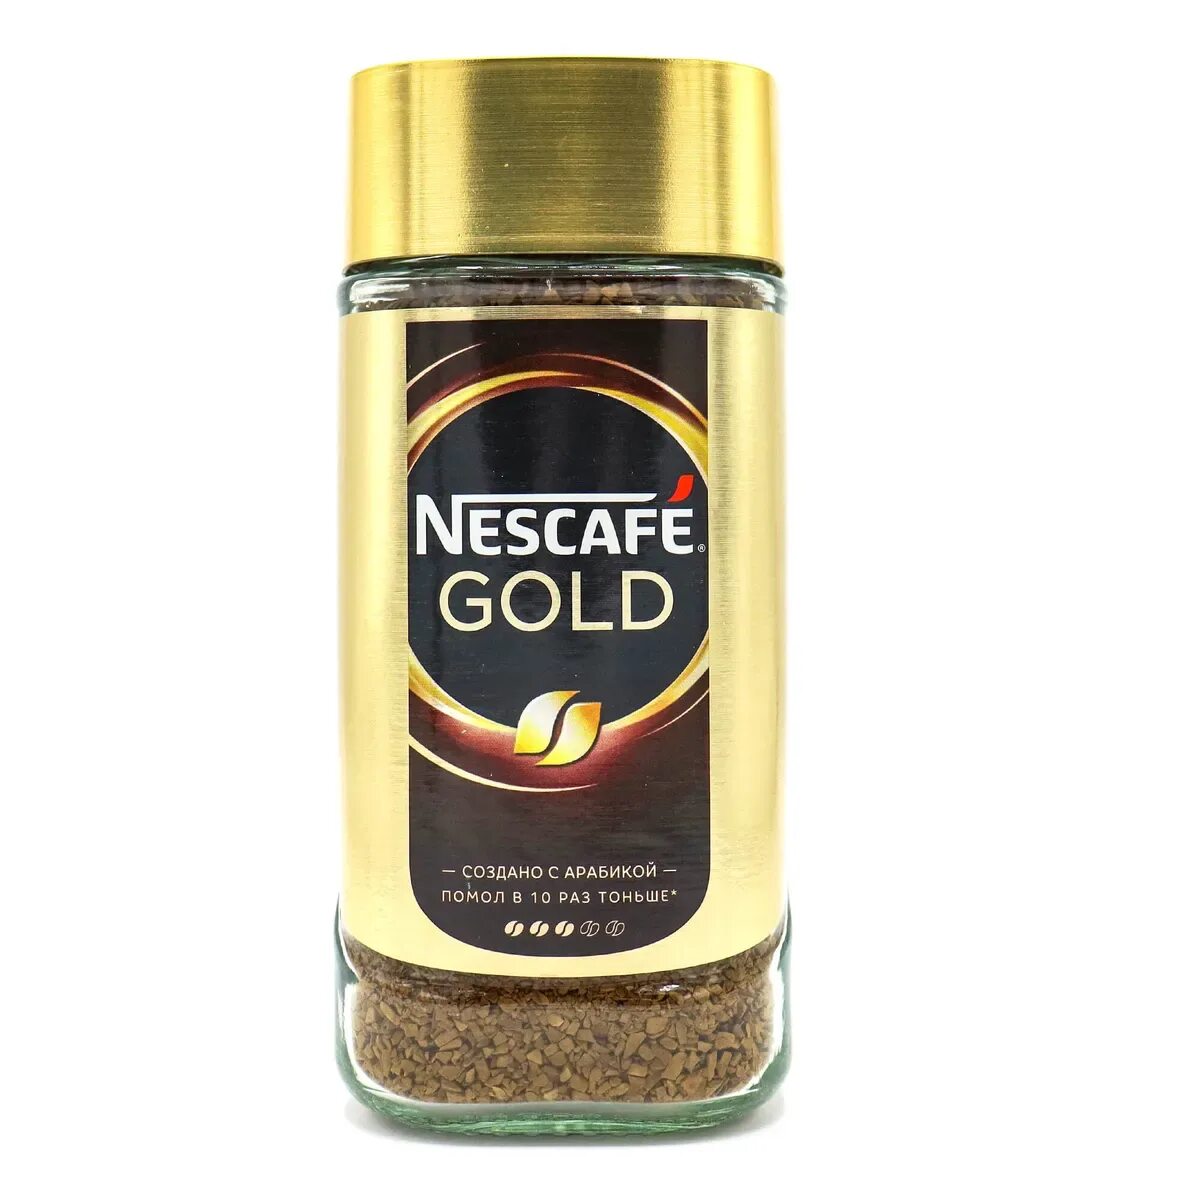 Купить кофе растворимый нескафе голд. Nescafe Gold 190г. Кофе Нескафе Голд 190г. Кофе растворимый Nescafe Gold, 190г. Нескафе Голд 190 стекло.